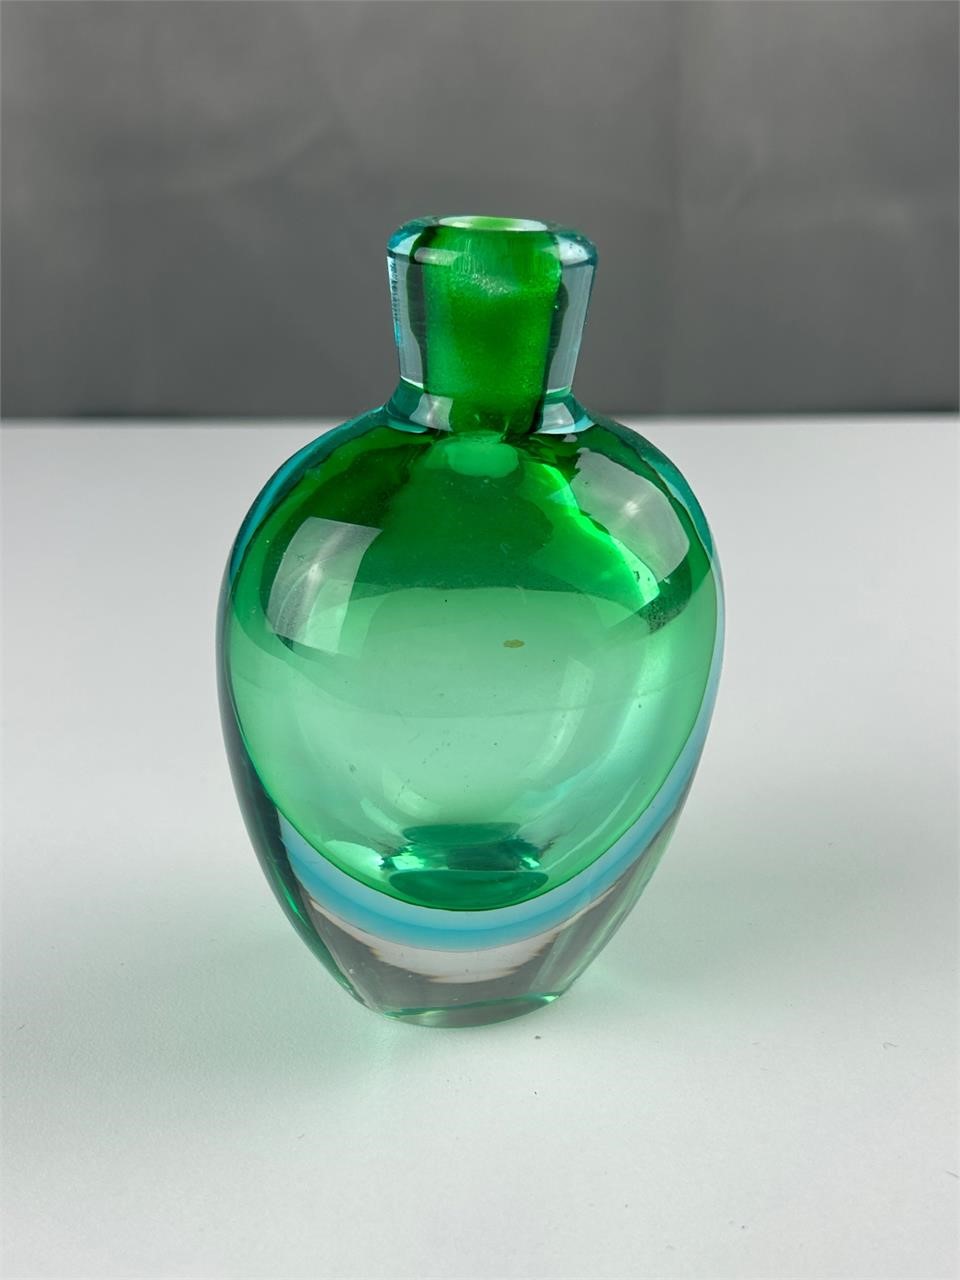 Pretty art glass bottle